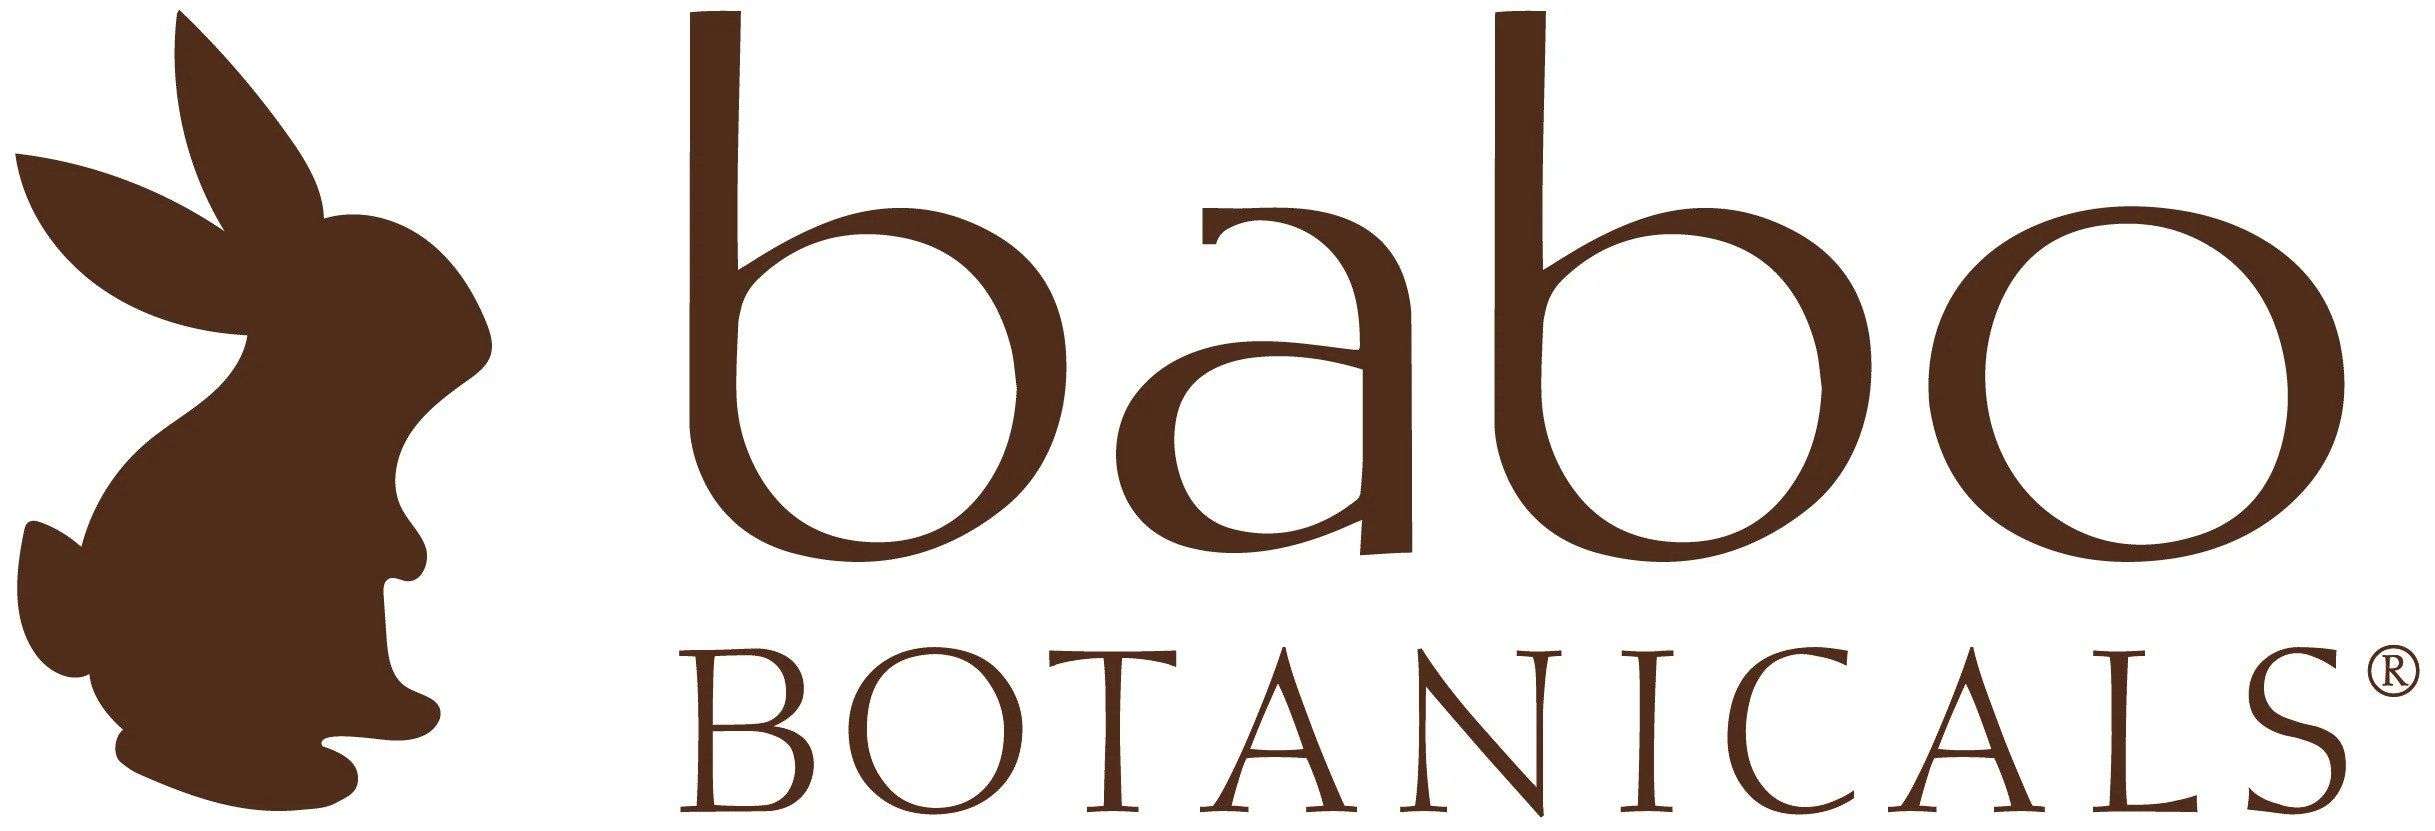 babo botanical logo